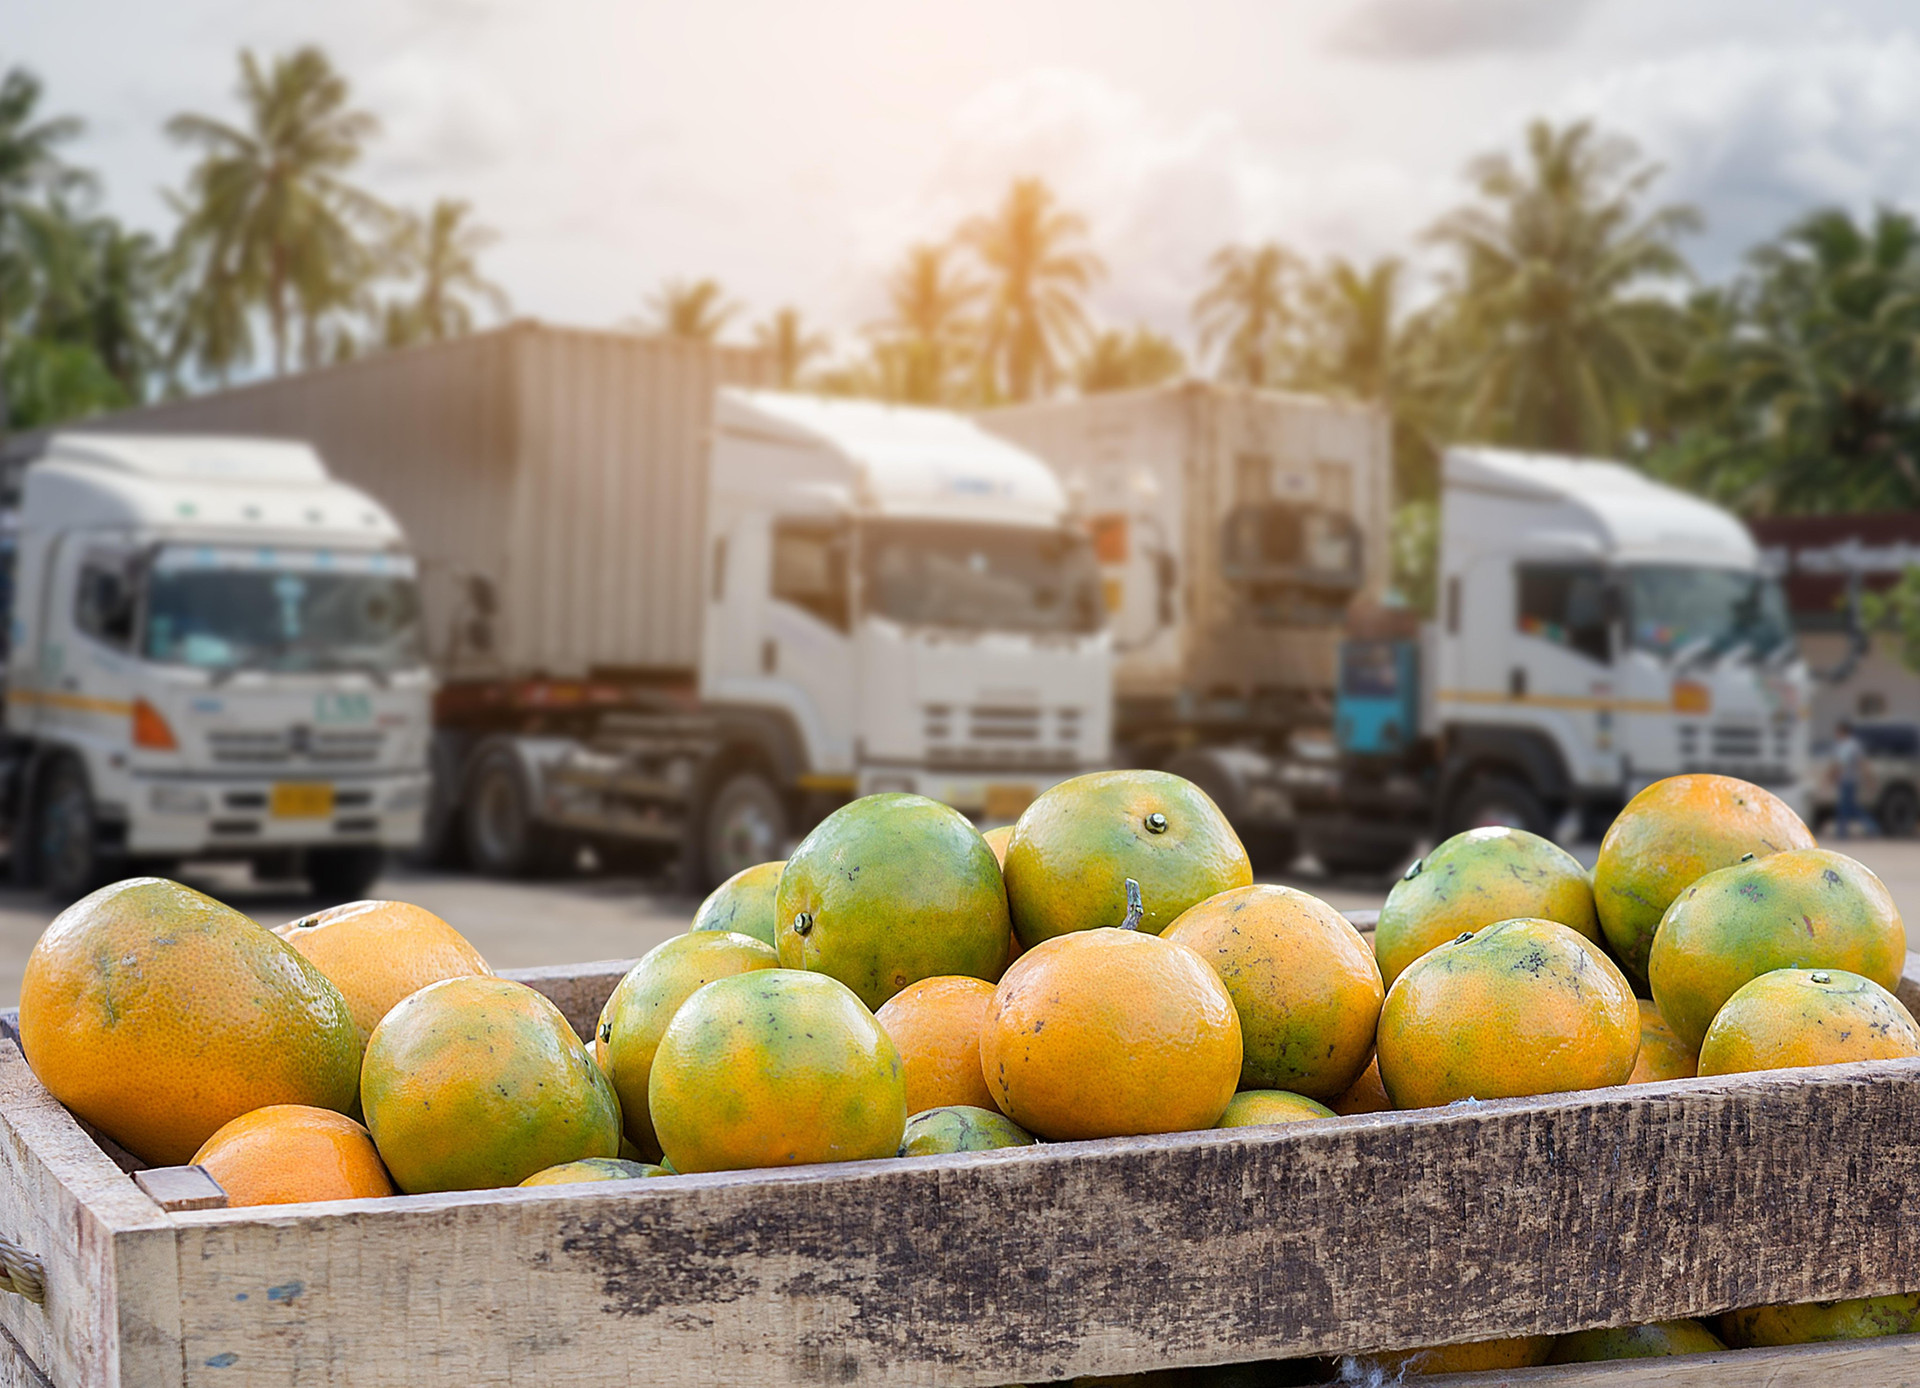 Thị trường logistics thực phẩm thông minh sẽ tăng trưởng mạnh